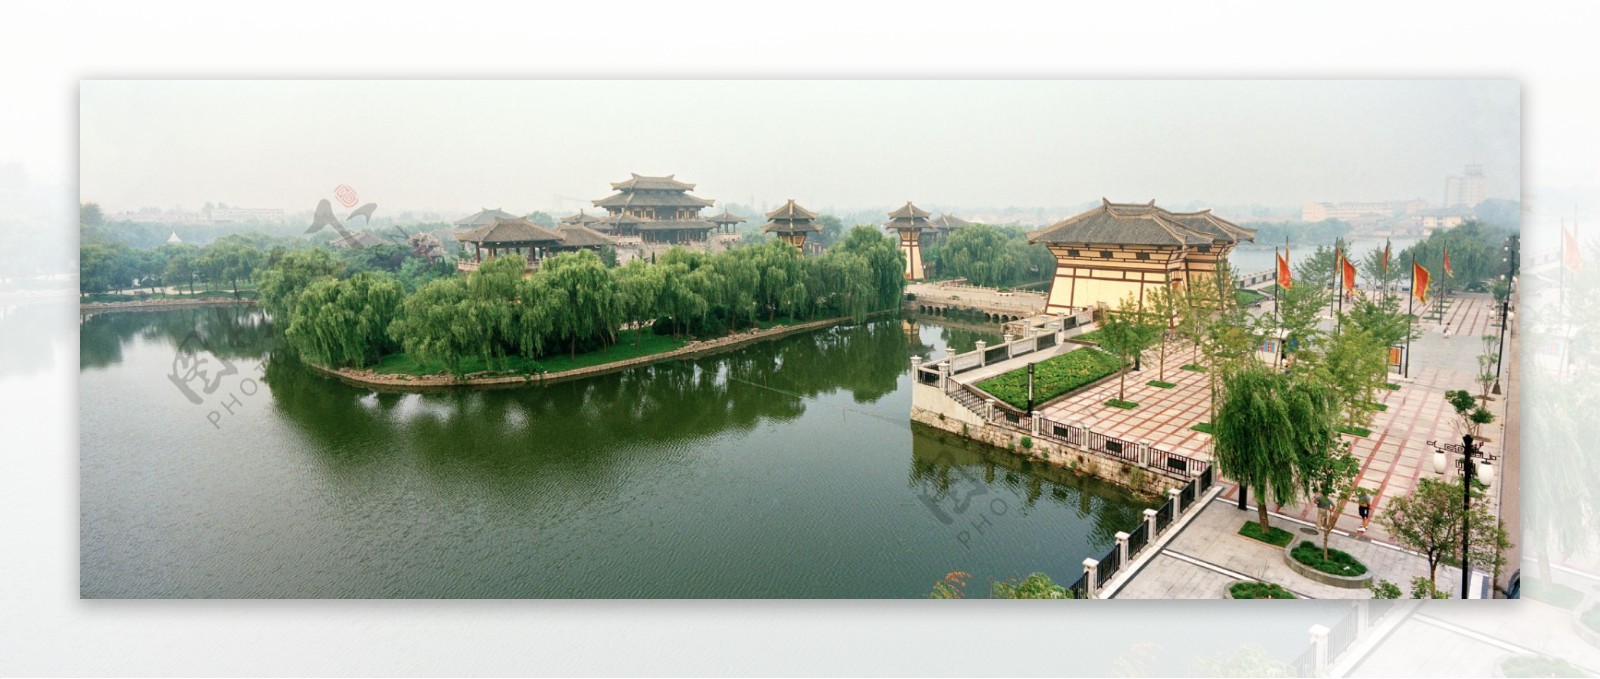 沛县汉城景区全景图图片